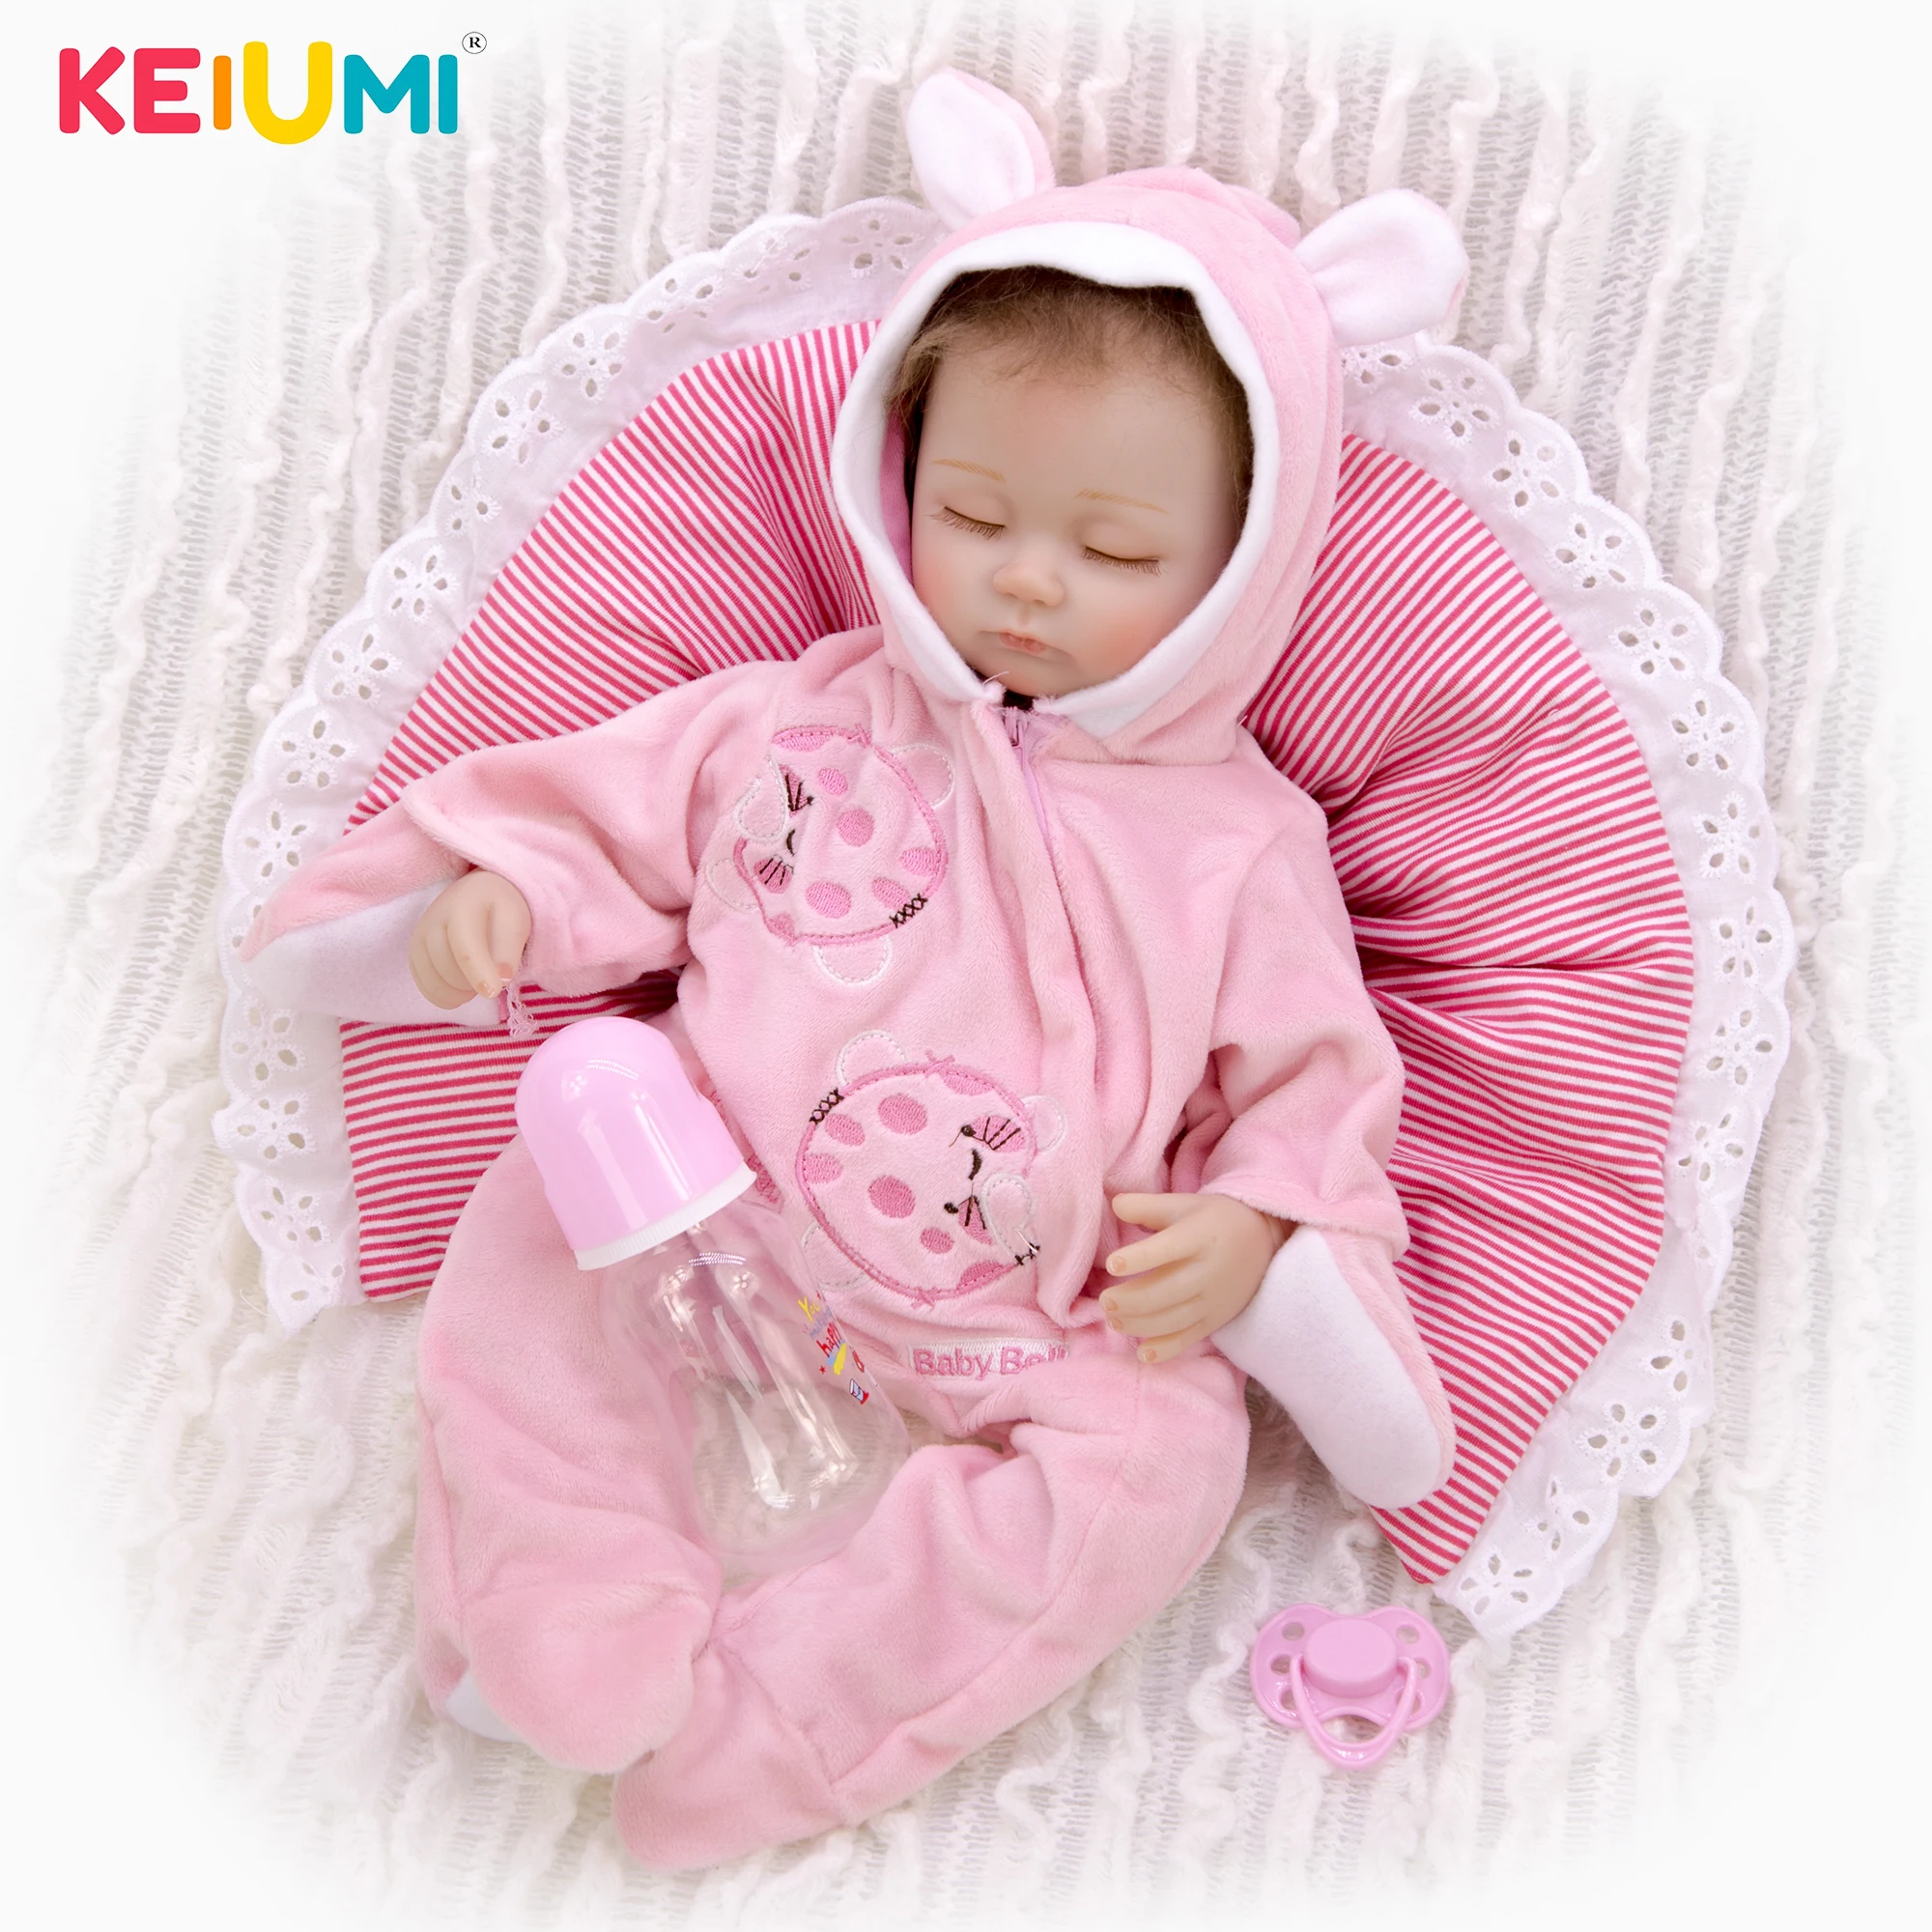 

KEIUMI Cute 17 Inch 42 cm Close Eyes As Sleeping Lifelike Reborn Baby Doll Soft Silicone Reborn Doll Toy For Kid Birthday Gift